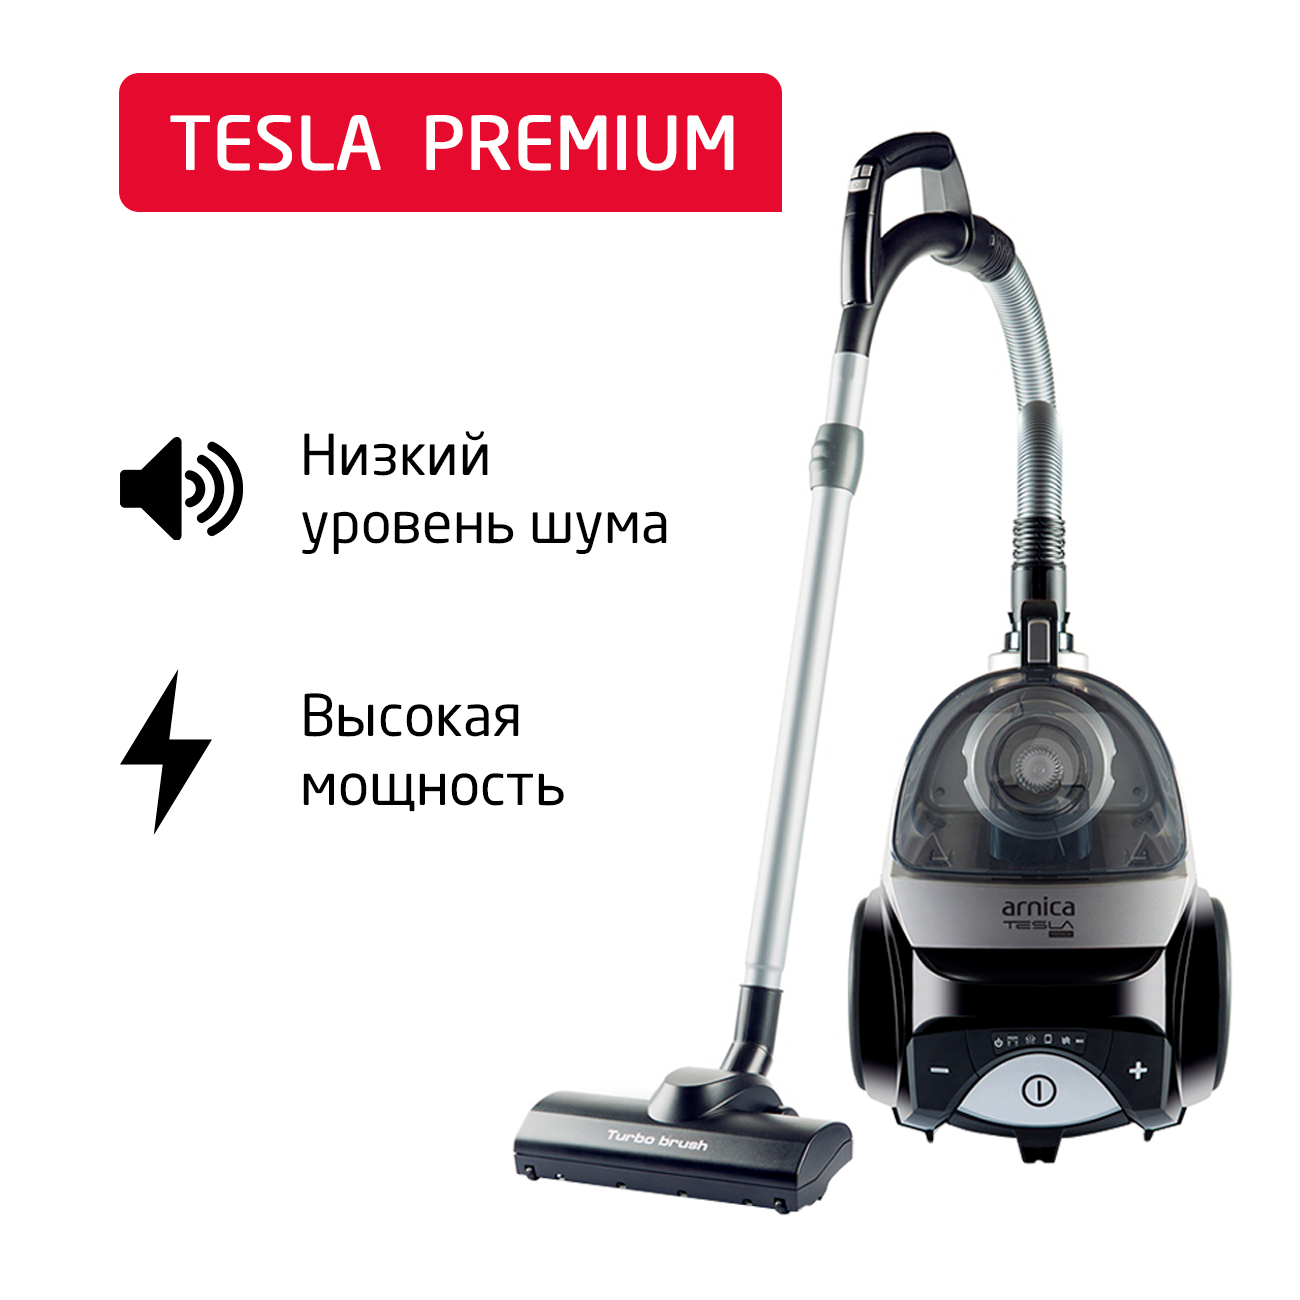 Пылесос ARNICA Tesla Premium серебристый, черный пылесос arnica tria pro фиолетовый